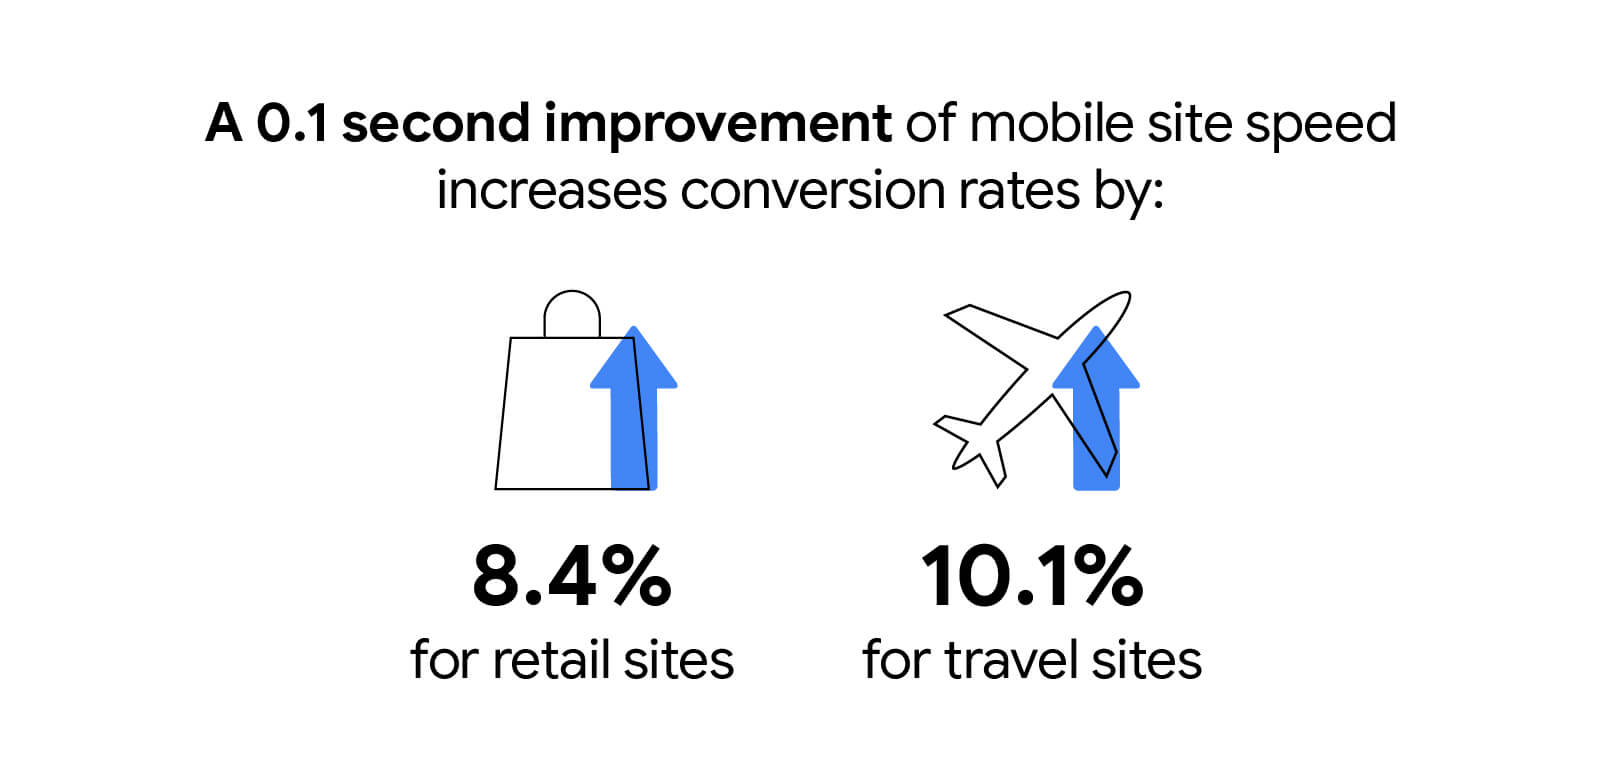 मोबाइल साइट की स्पीड में 0.1 सेकंड की बढ़ोतरी से कन्वर्ज़न रेट में 8.4% और ट्रैवल साइटों के लिए 10.1% की बढ़ोतरी हुई.